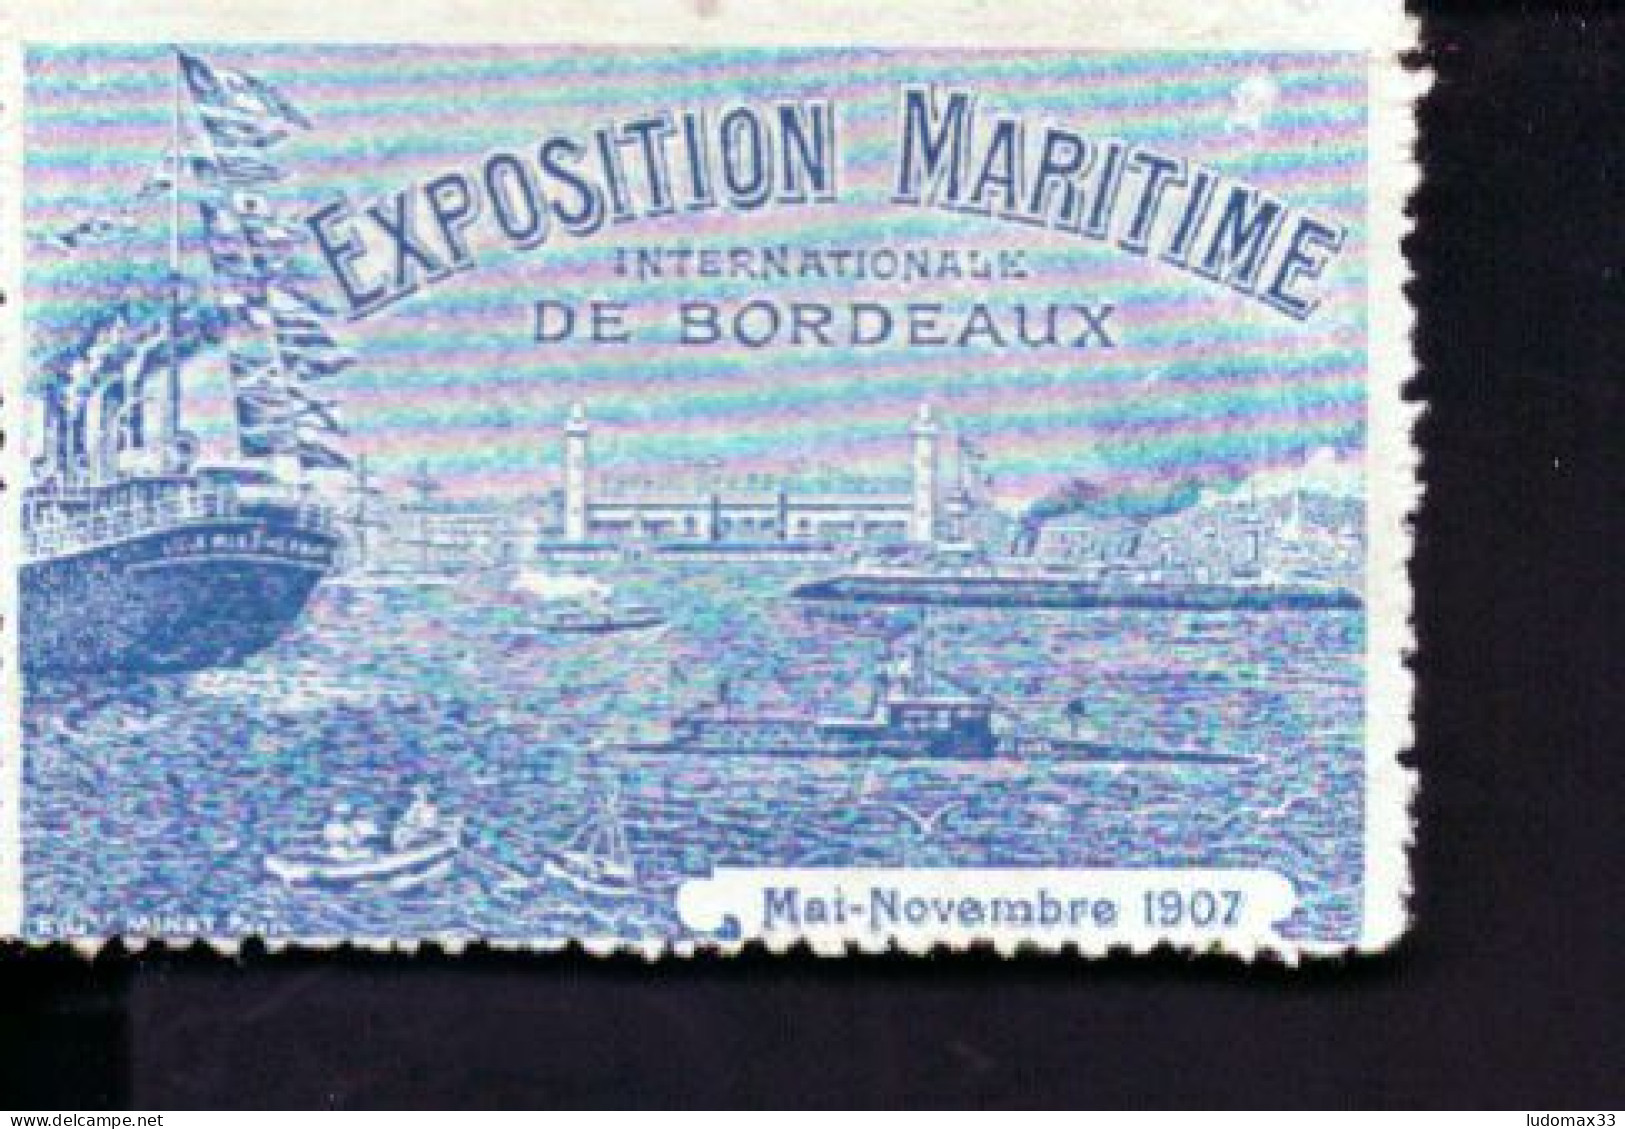 Vignette Exposition Maritime De Bordeaux - Expositions Philatéliques